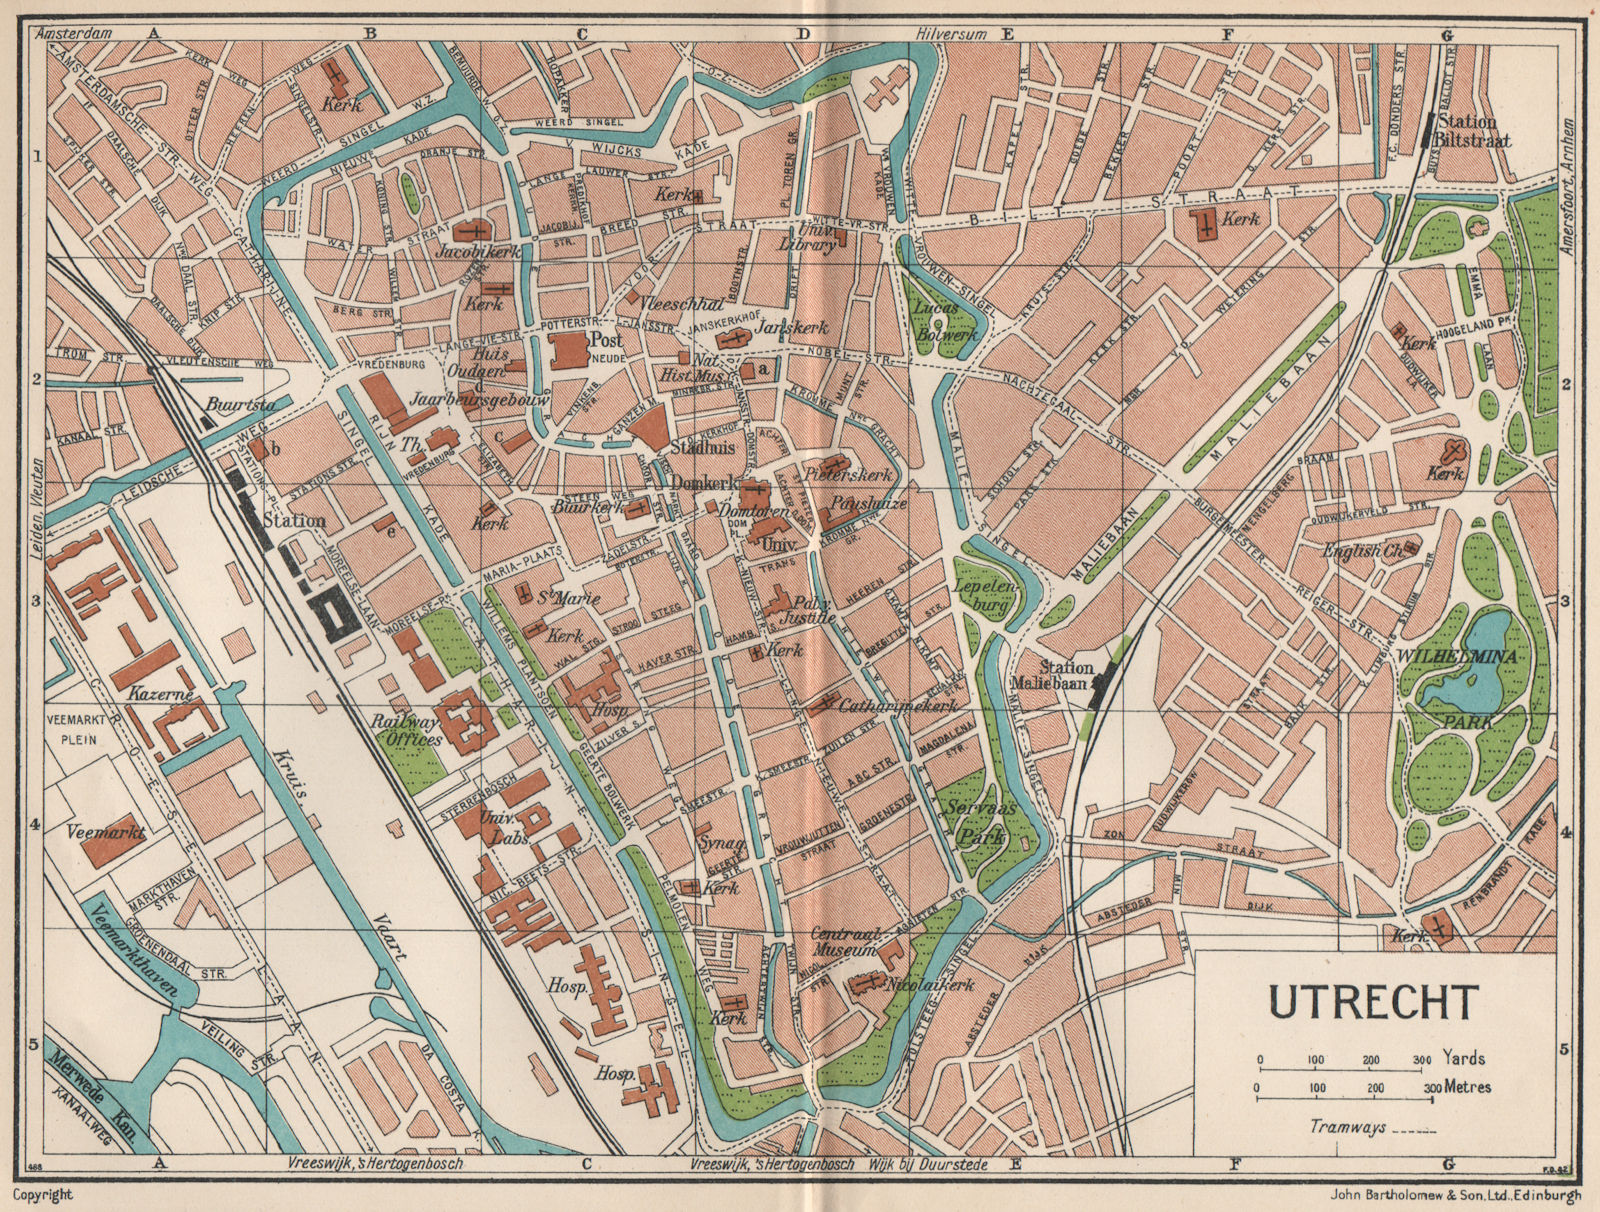 UTRECHT. Vintage town city map plan. Netherlands 1933 old vintage chart